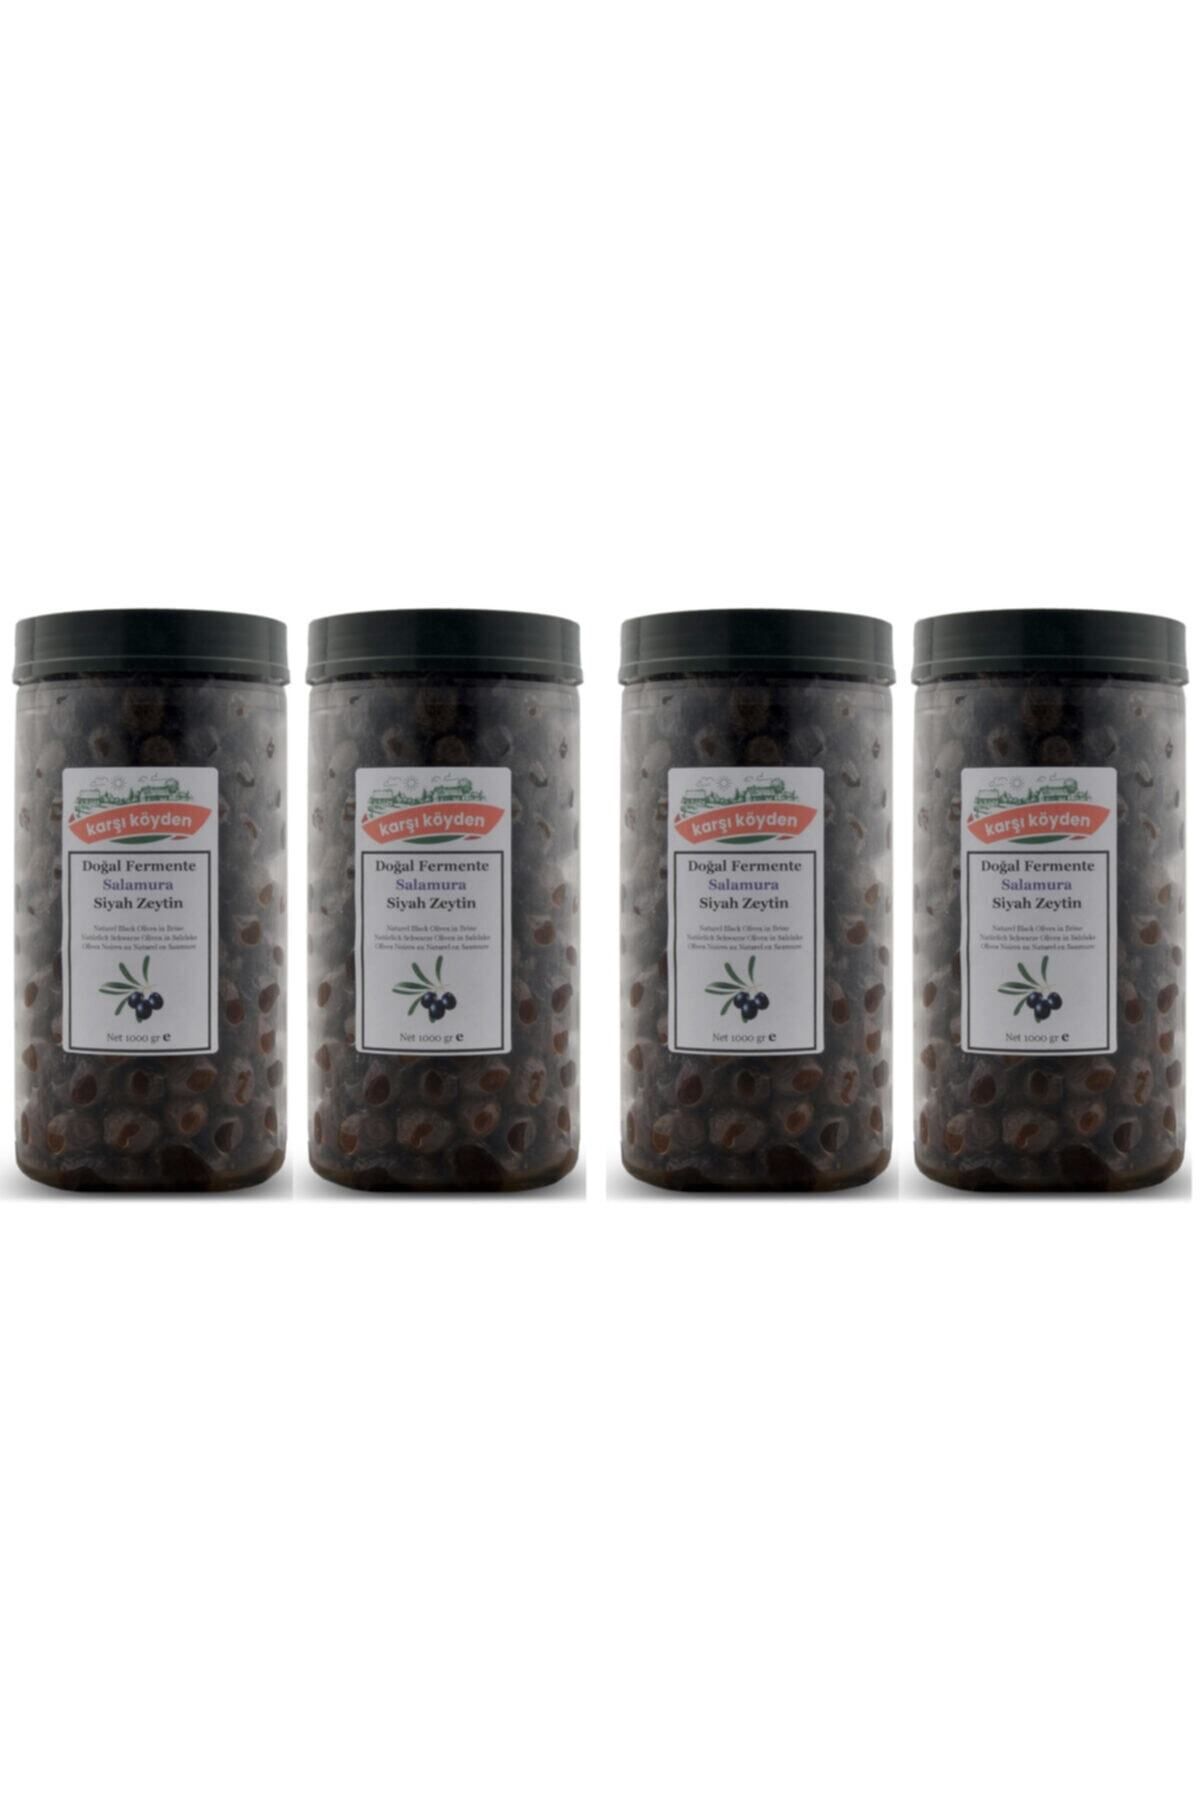 Karşı Köyden Taş Baskı Doğal Fermente Salamura Siyah Zeytin (1 Kg X 4'lü Avantajlı Paket